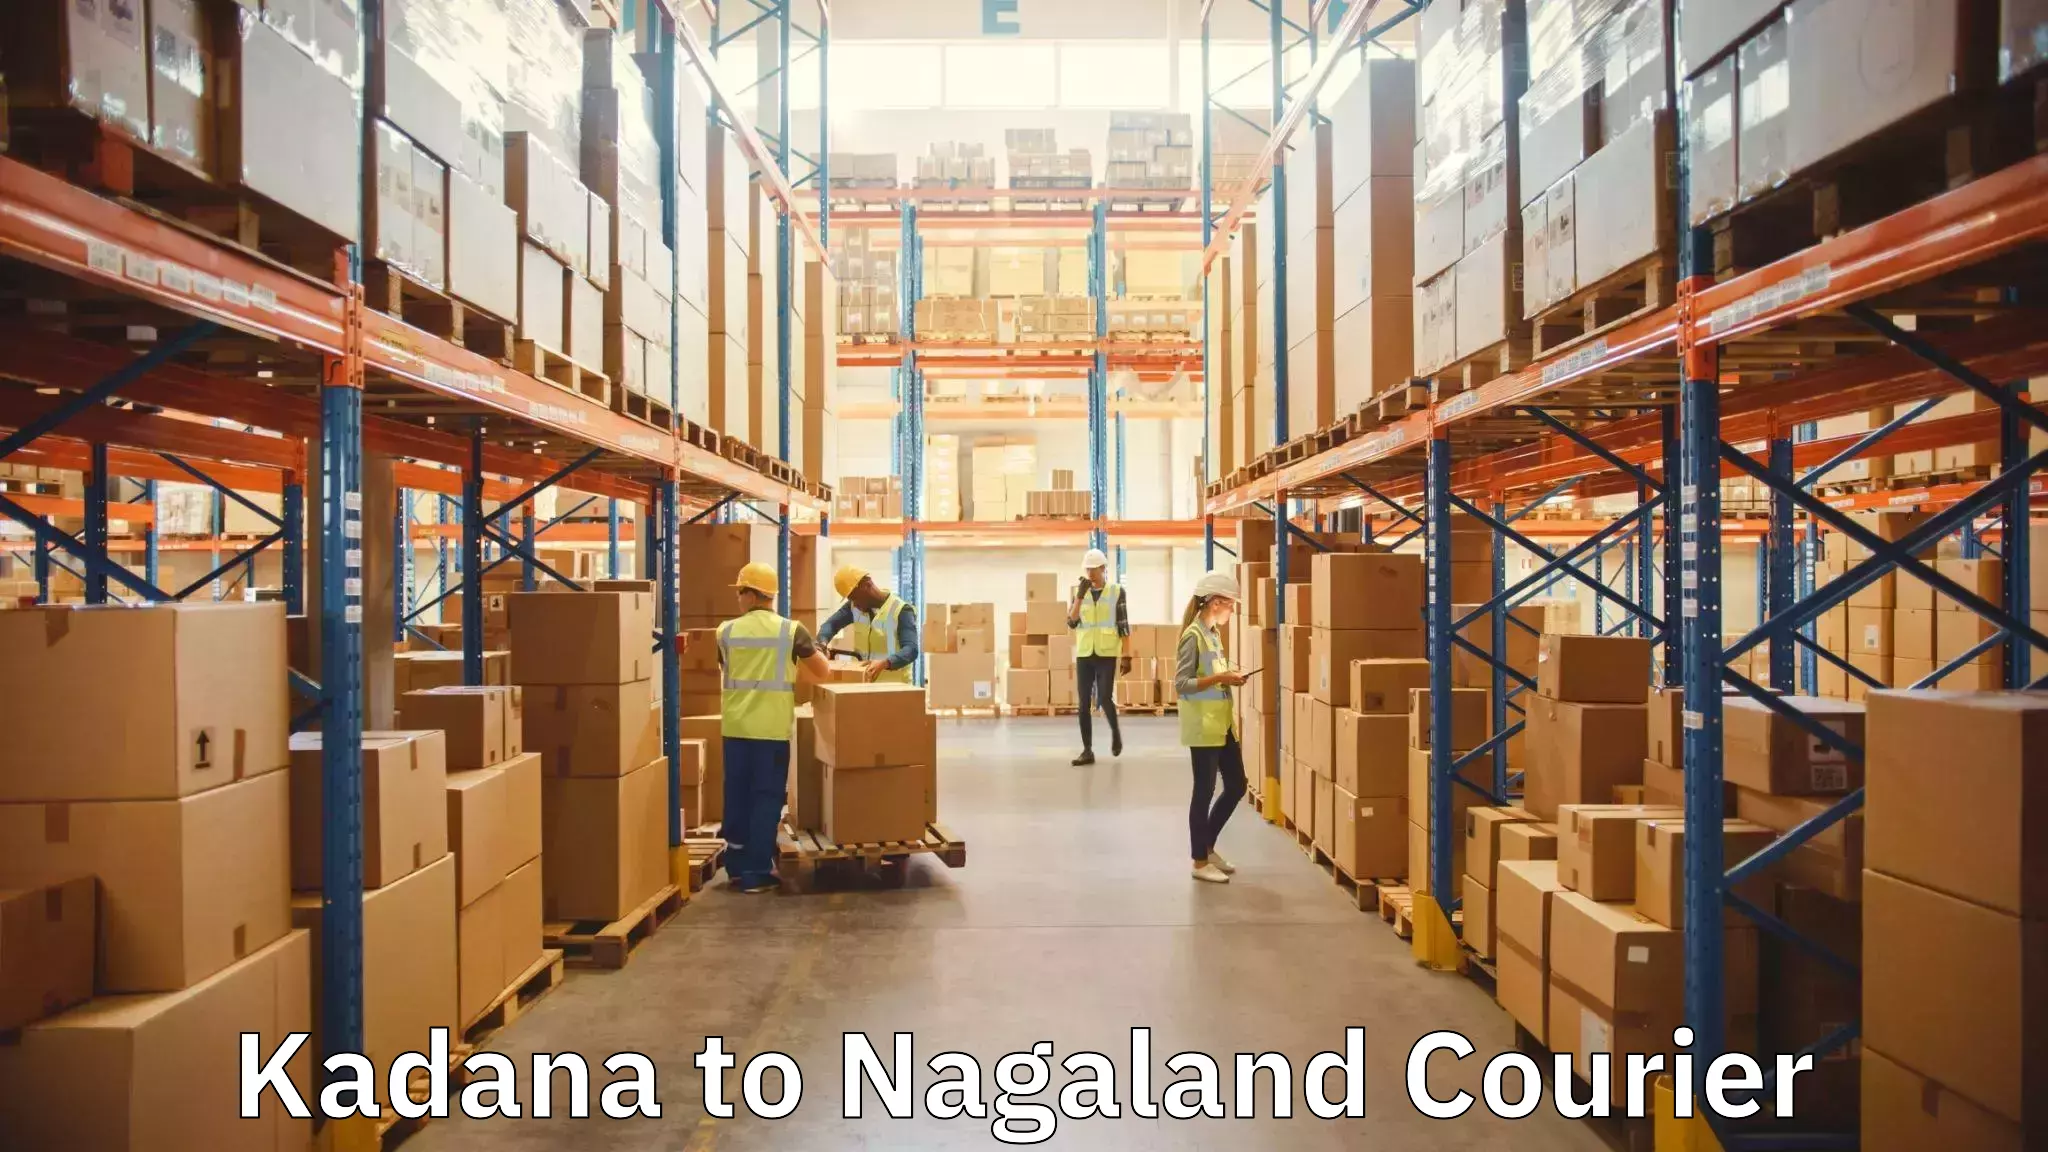 Furniture transport experts Kadana to NIT Nagaland